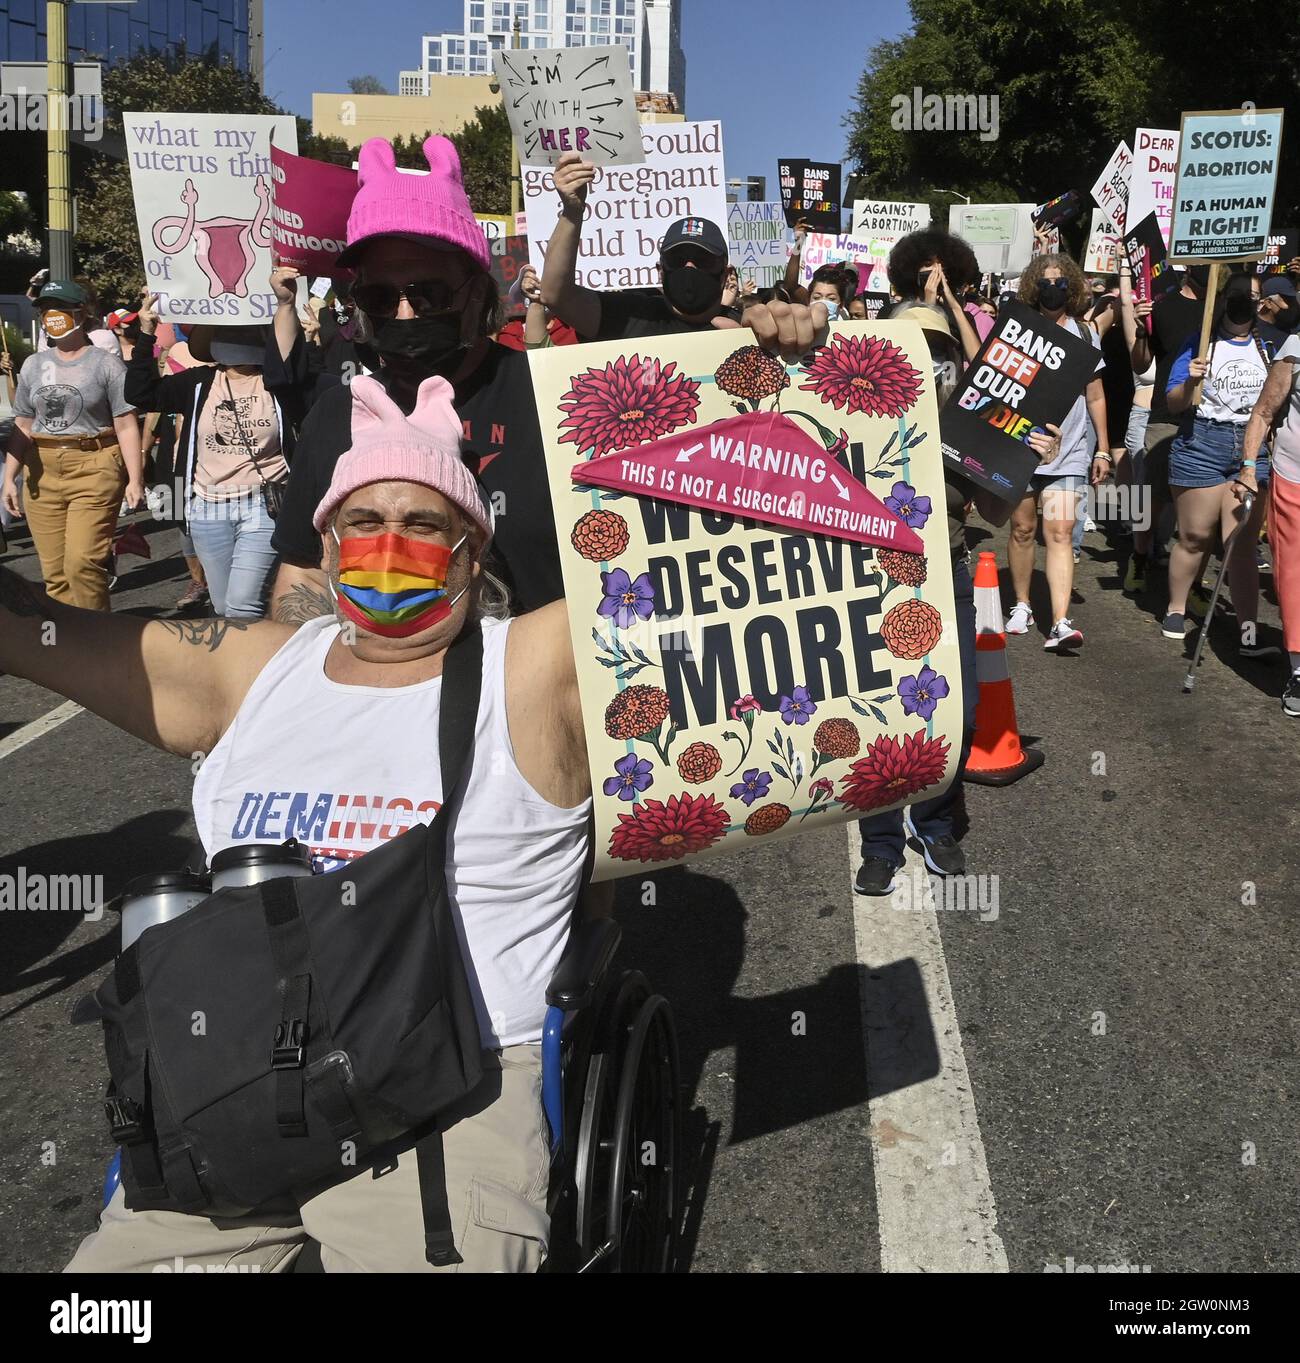 Los Angeles, Usa. Oktober 2021. Tausende von Menschen gehen heute in der Innenstadt von Los Angeles und an anderen Orten im Südwesten auf die Straße, um die reproduktiven Rechte zu unterstützen, Teil einer landesweiten Serie von Demonstrationen gegen das nahezu vollständige Abtreibungsverbot von Texas am Samstag, den 1. Oktober 2021. Die Women's March Foundation veranstaltete ihren offiziellen marsch in Washington, DC, mit mehr als 600 "Schwestermärschen" auf nationaler Ebene. Foto von Jim Ruymen/UPI Credit: UPI/Alamy Live News Stockfoto